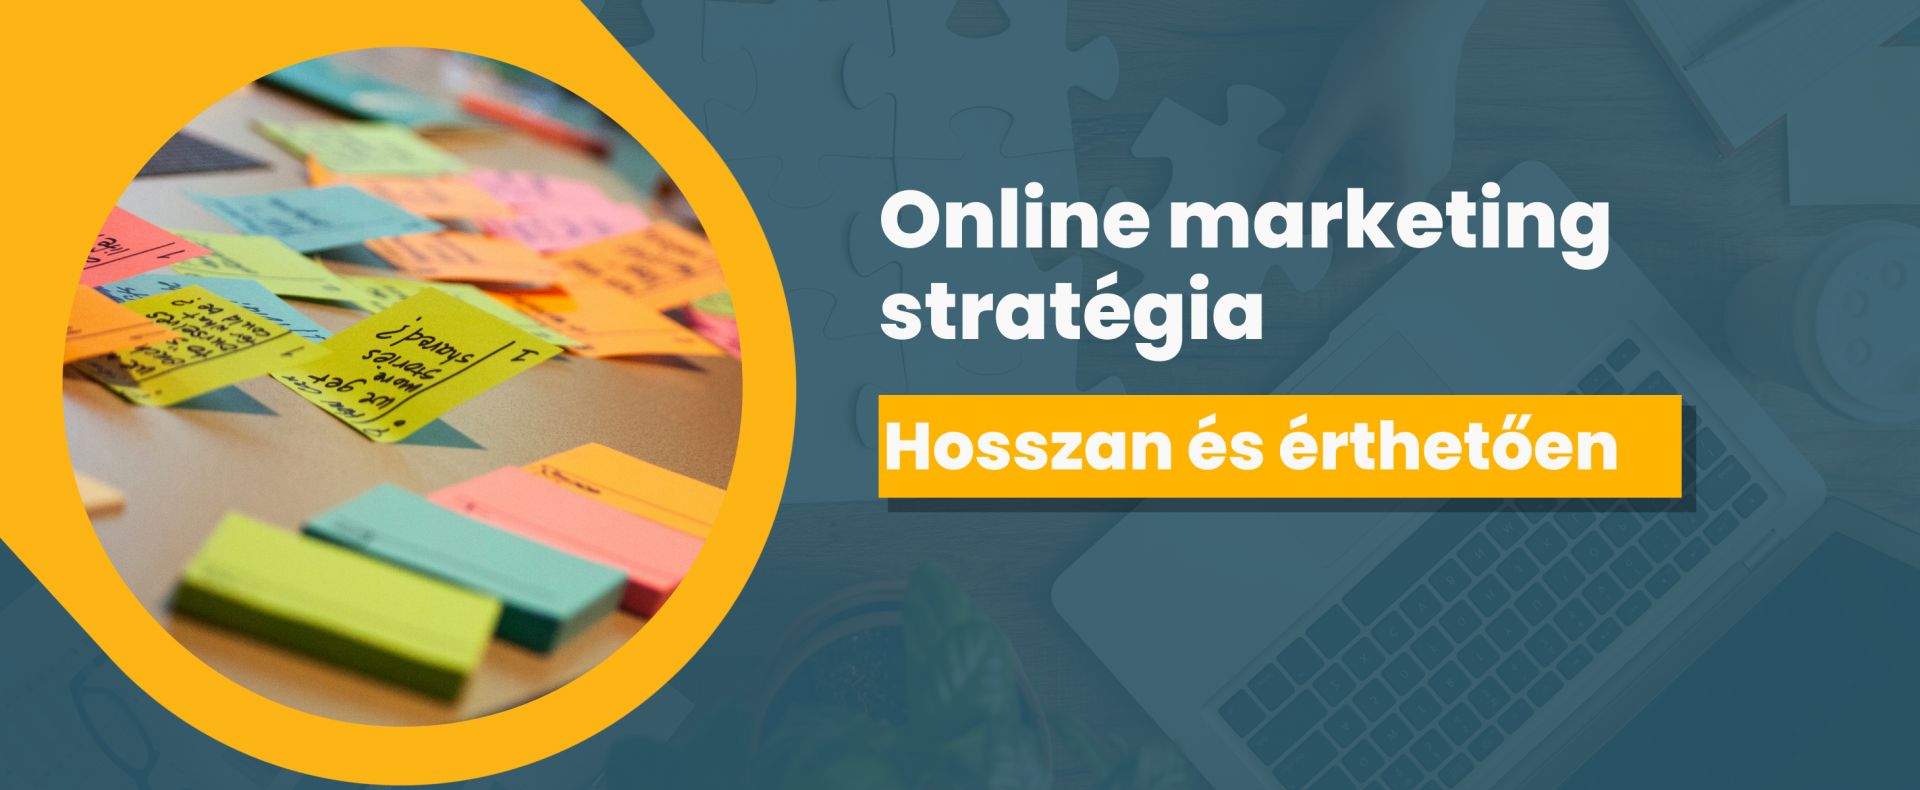 Online marketing stratégia  - hosszan és érthetően